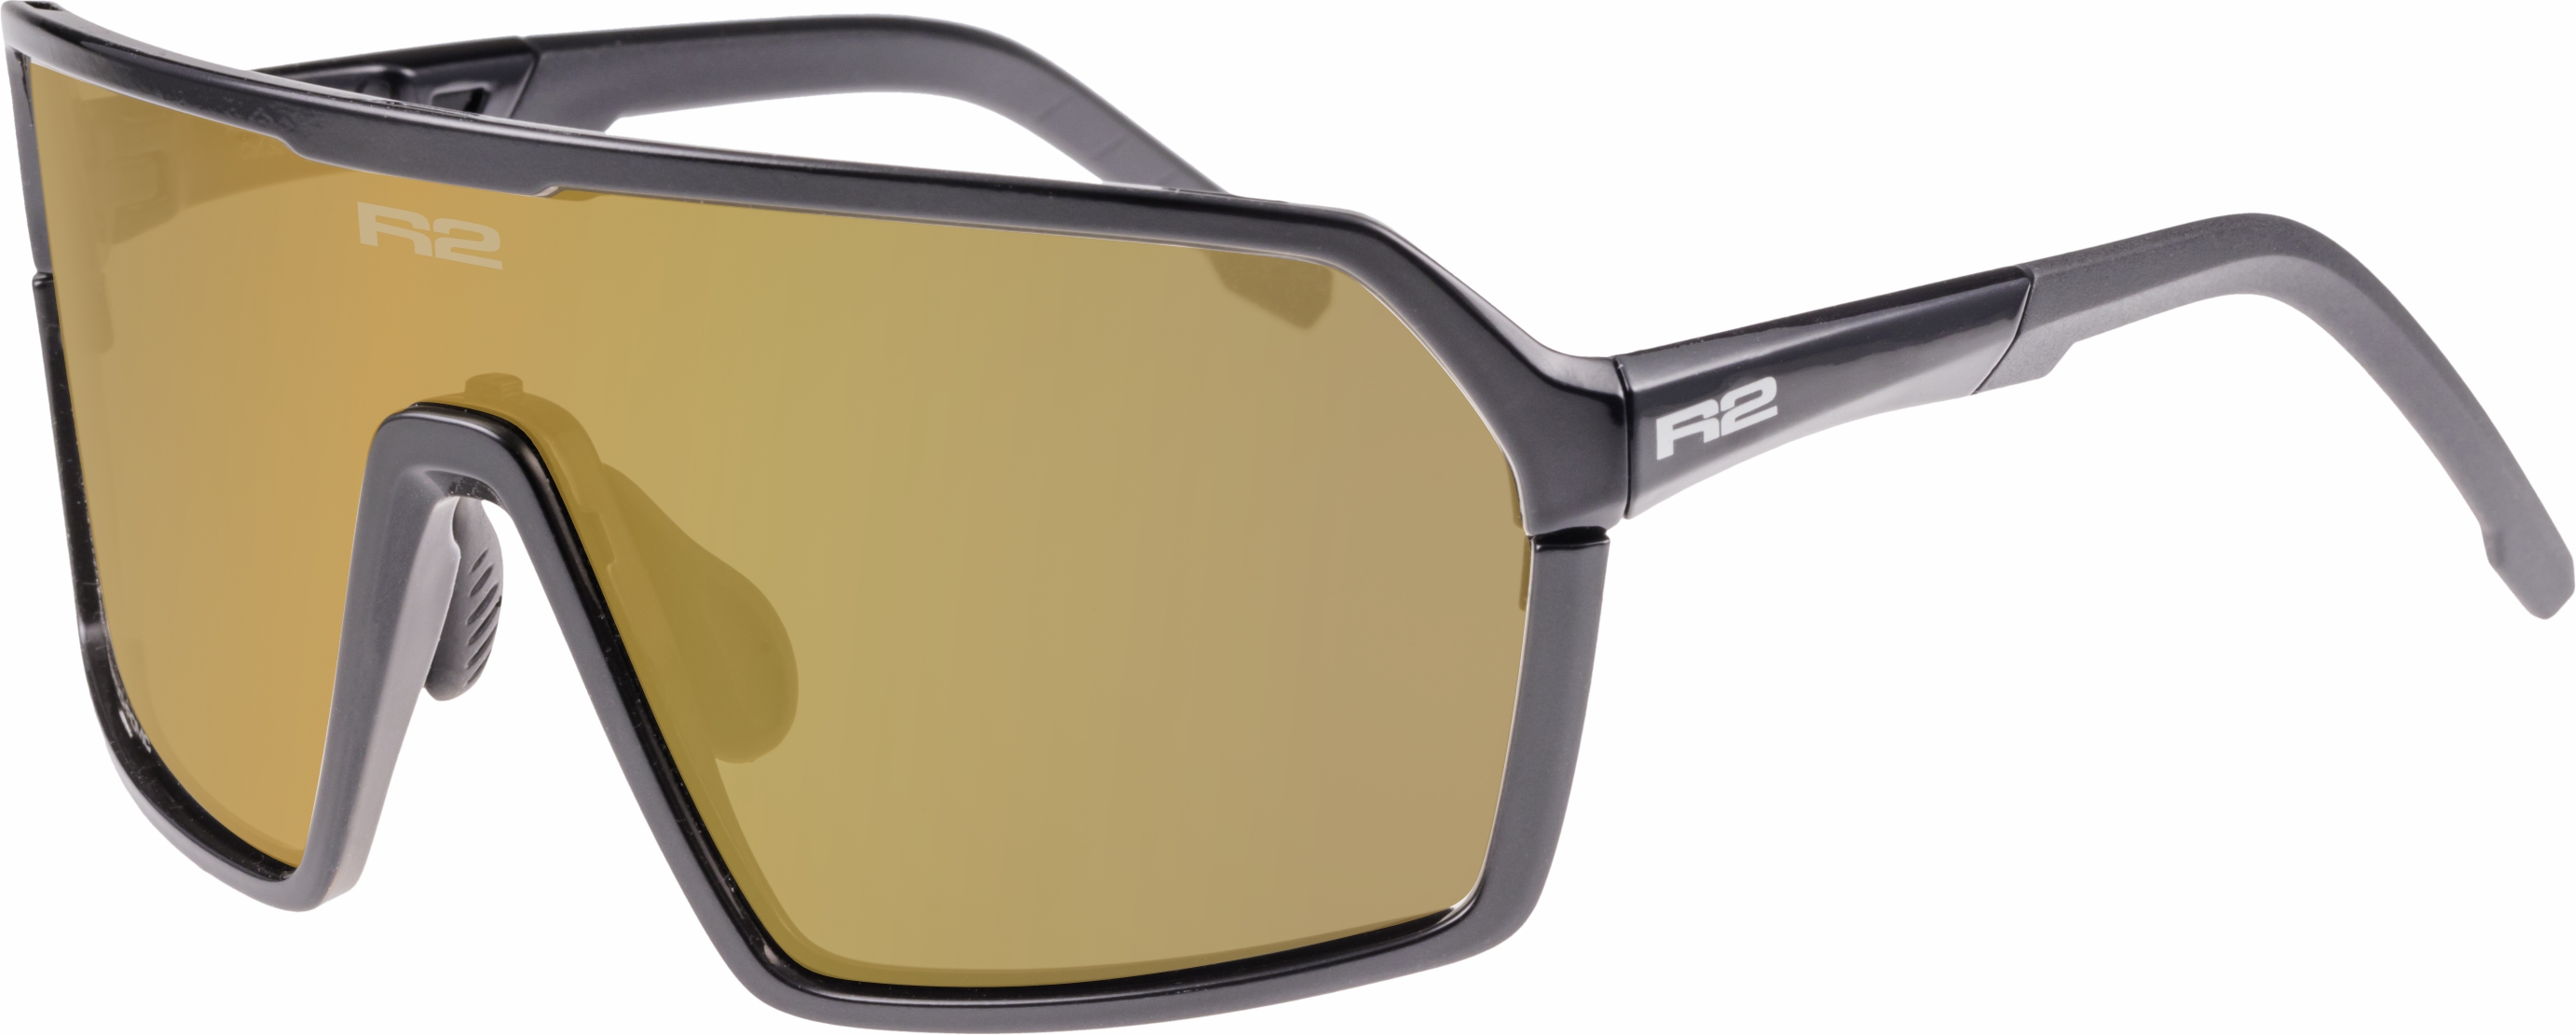 Sportovní sluneční brýle R2 FACTOR AT111A - standard